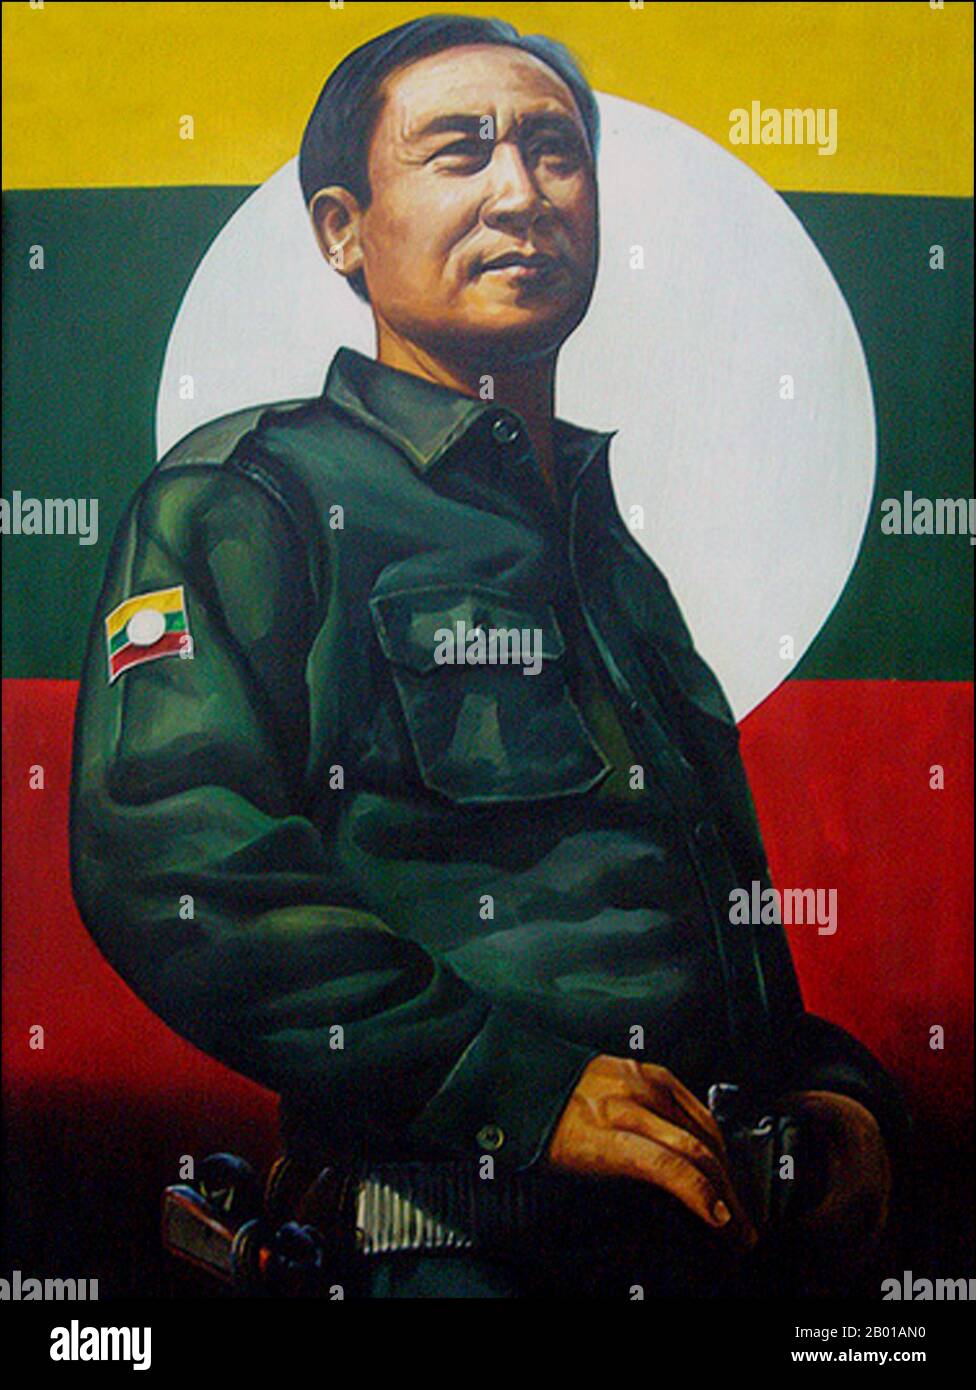 Birmanie/Myanmar: Khun sa (17 février 1934 - 26 octobre 2007) était un seigneur de guerre birman. Il a été surnommé le « roi de l'opium » en raison de son commerce de l'opium dans la région du Triangle d'Or. Il était également le chef de l'Armée unie Shan et de l'Armée tong Tai. Khun sa est né d'un père chinois et d'une mère Shan. Il a adopté le pseudonyme de Khun sa, signifiant "Prince prospère". Dans sa jeunesse, il s'est entraîné avec le Kuomintang, qui s'était enfui du Yunnan dans les régions frontalières de la Birmanie à la suite de sa défaite dans la guerre civile chinoise, et a finalement formé sa propre armée de quelques centaines d'hommes. Banque D'Images